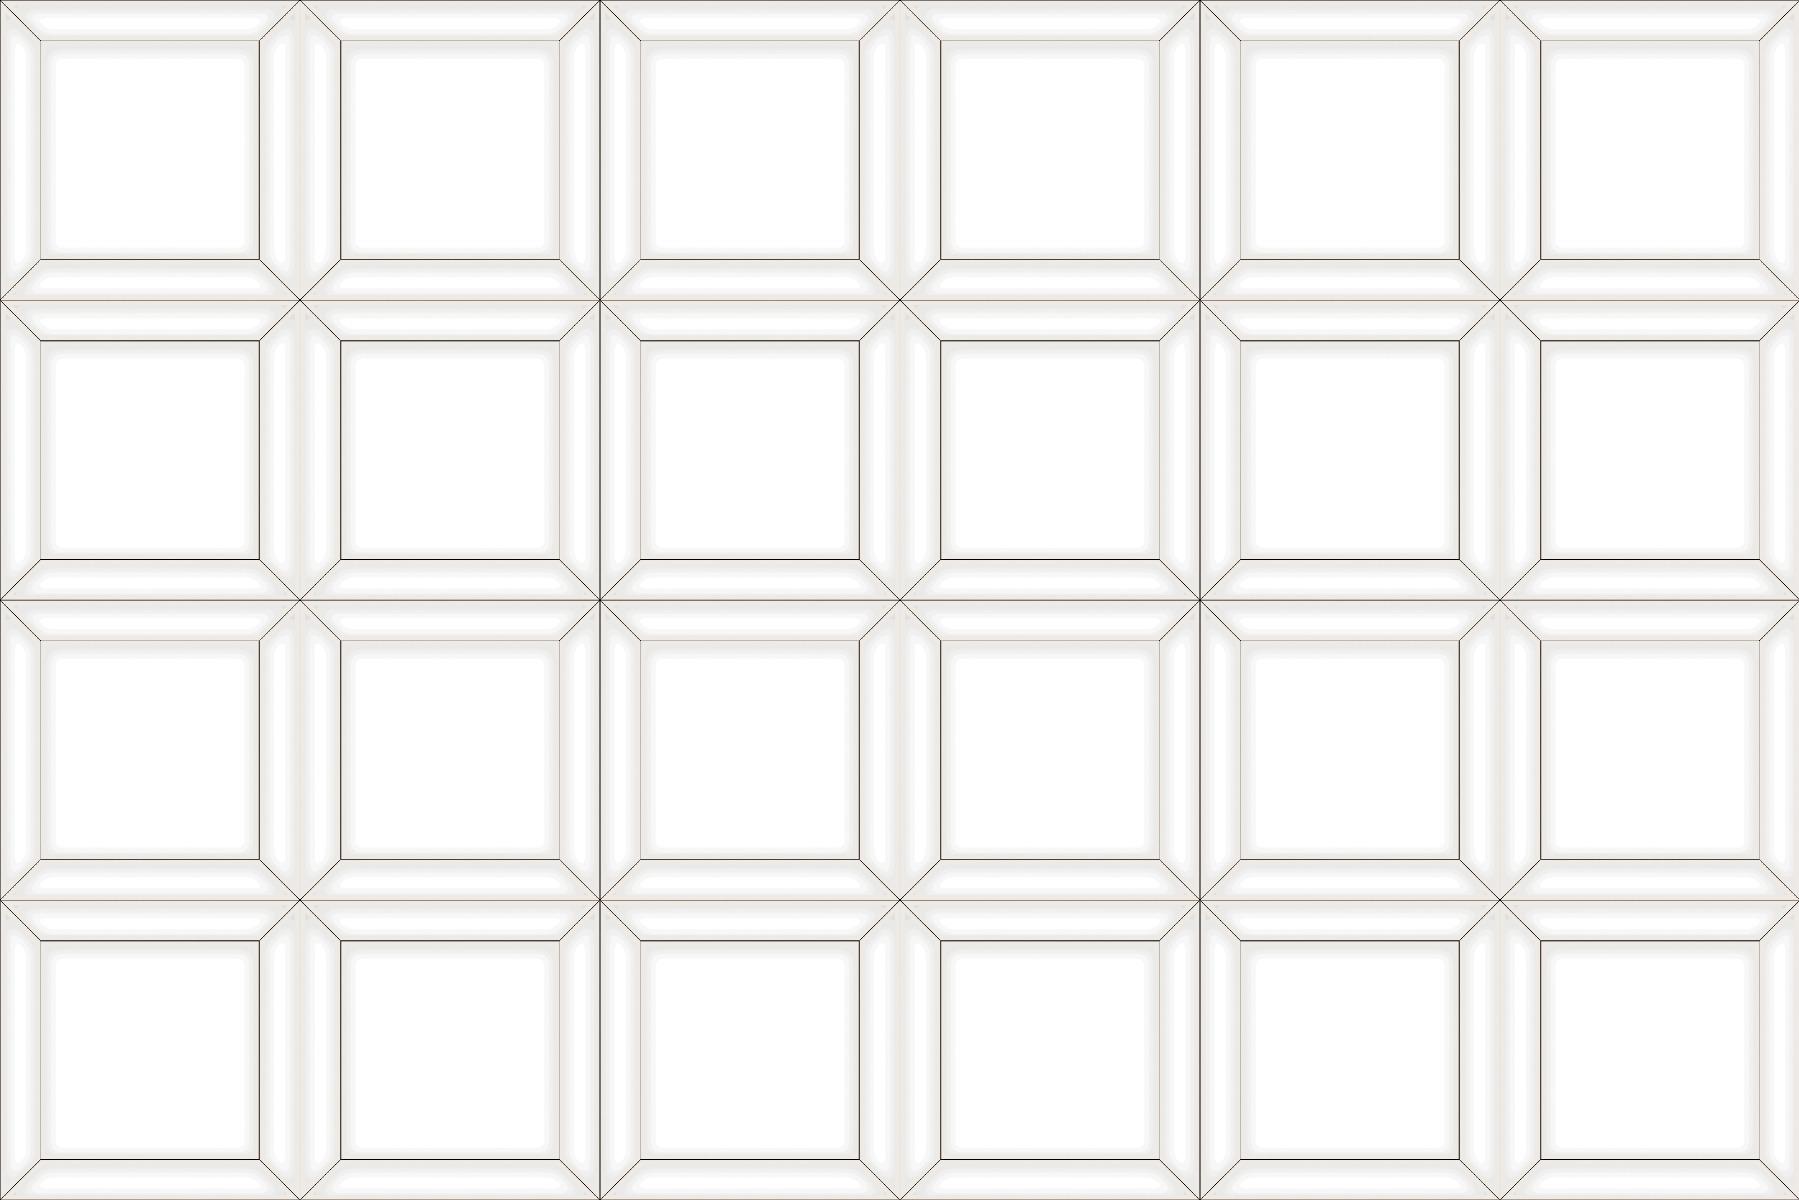 Ceramic Tiles for Bathroom Tiles, Living Room Tiles, Accent Tiles